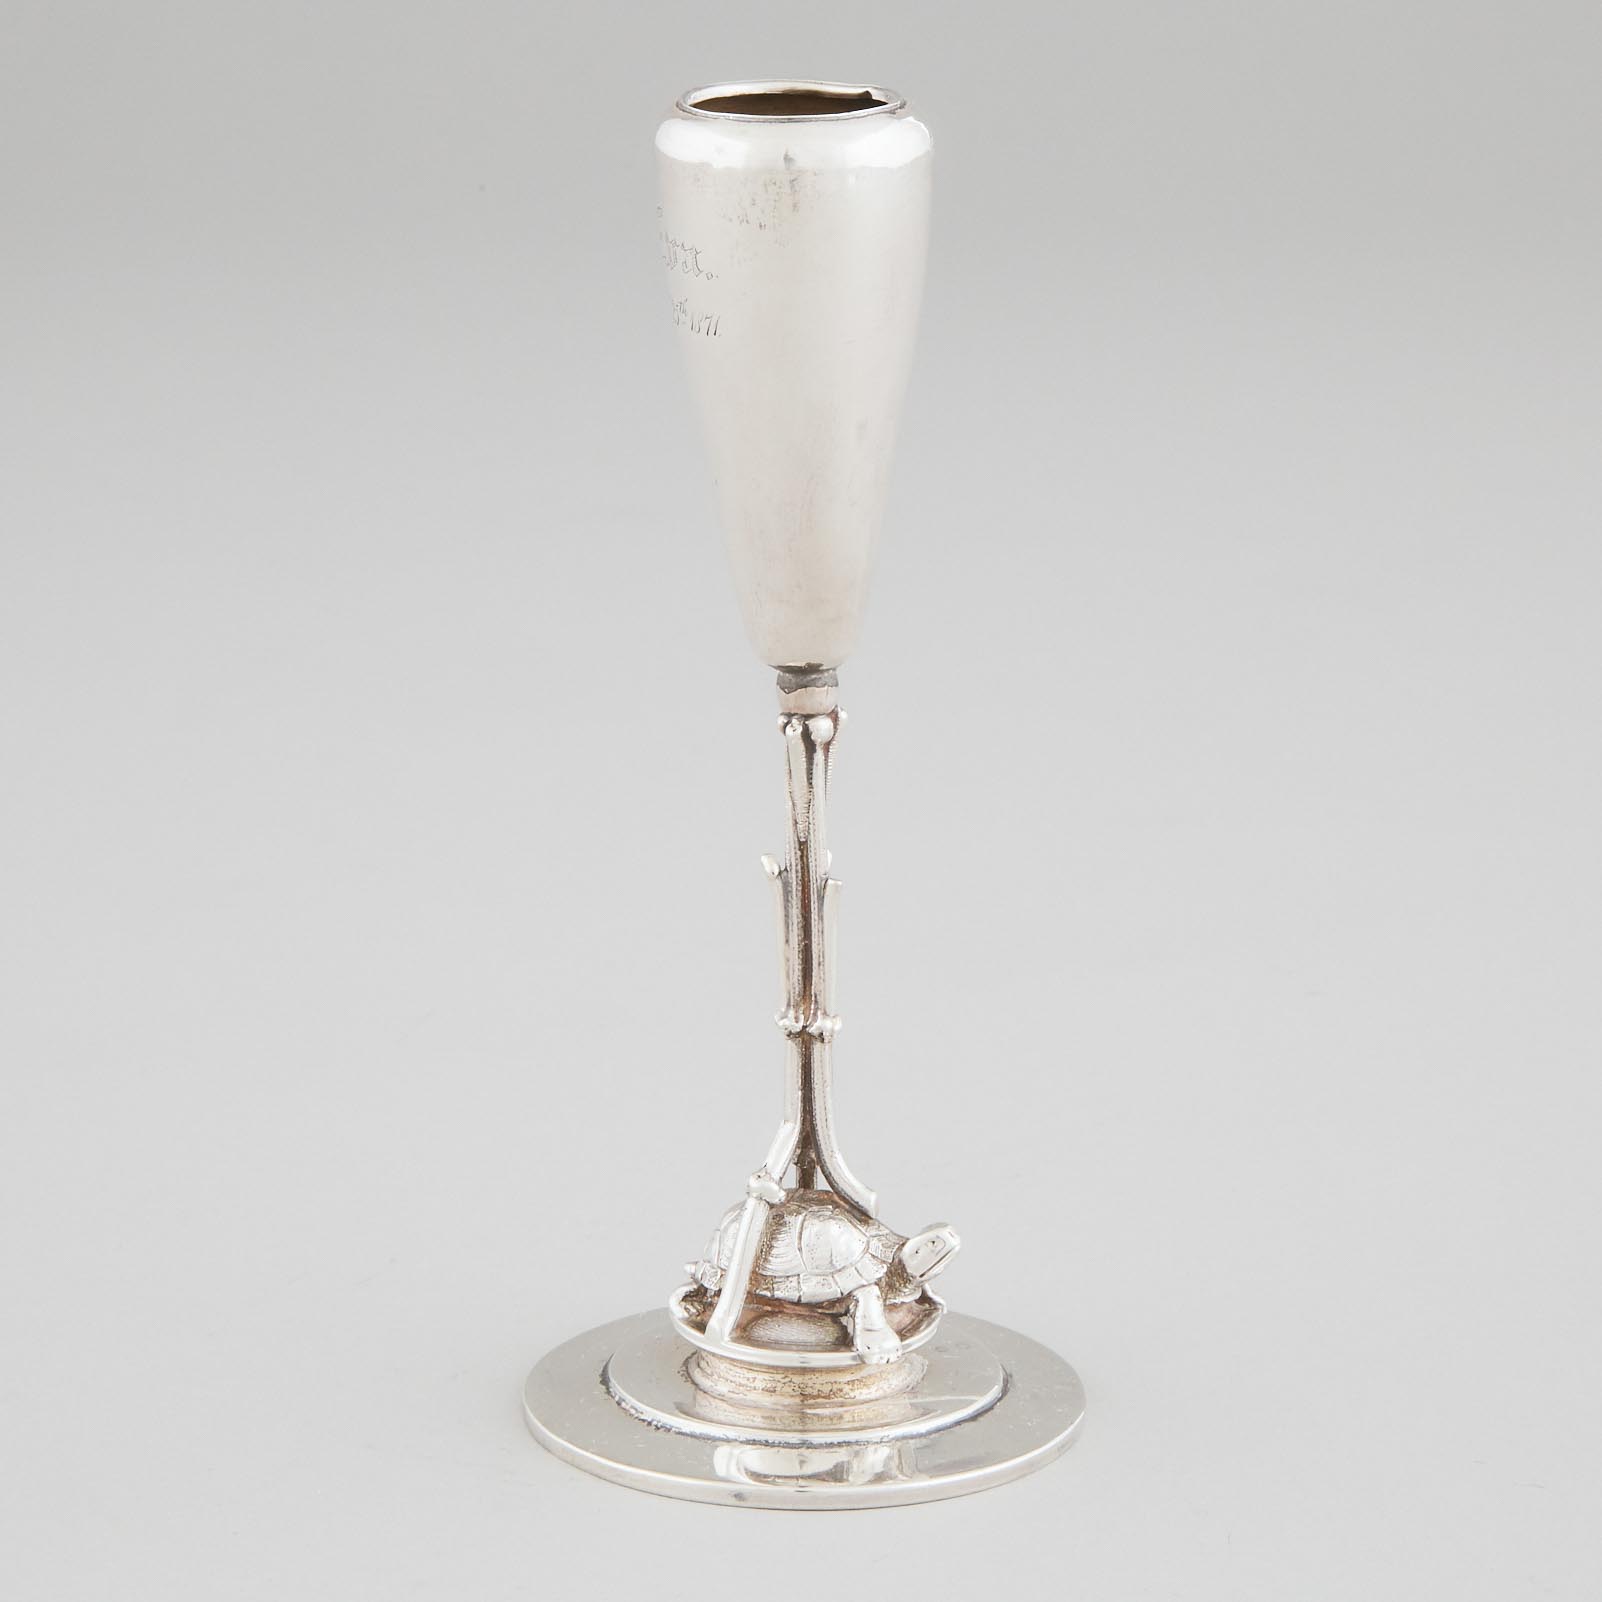 American Silver Bud Vase, probably Tiffany & Co., New York, N.Y., c.1871